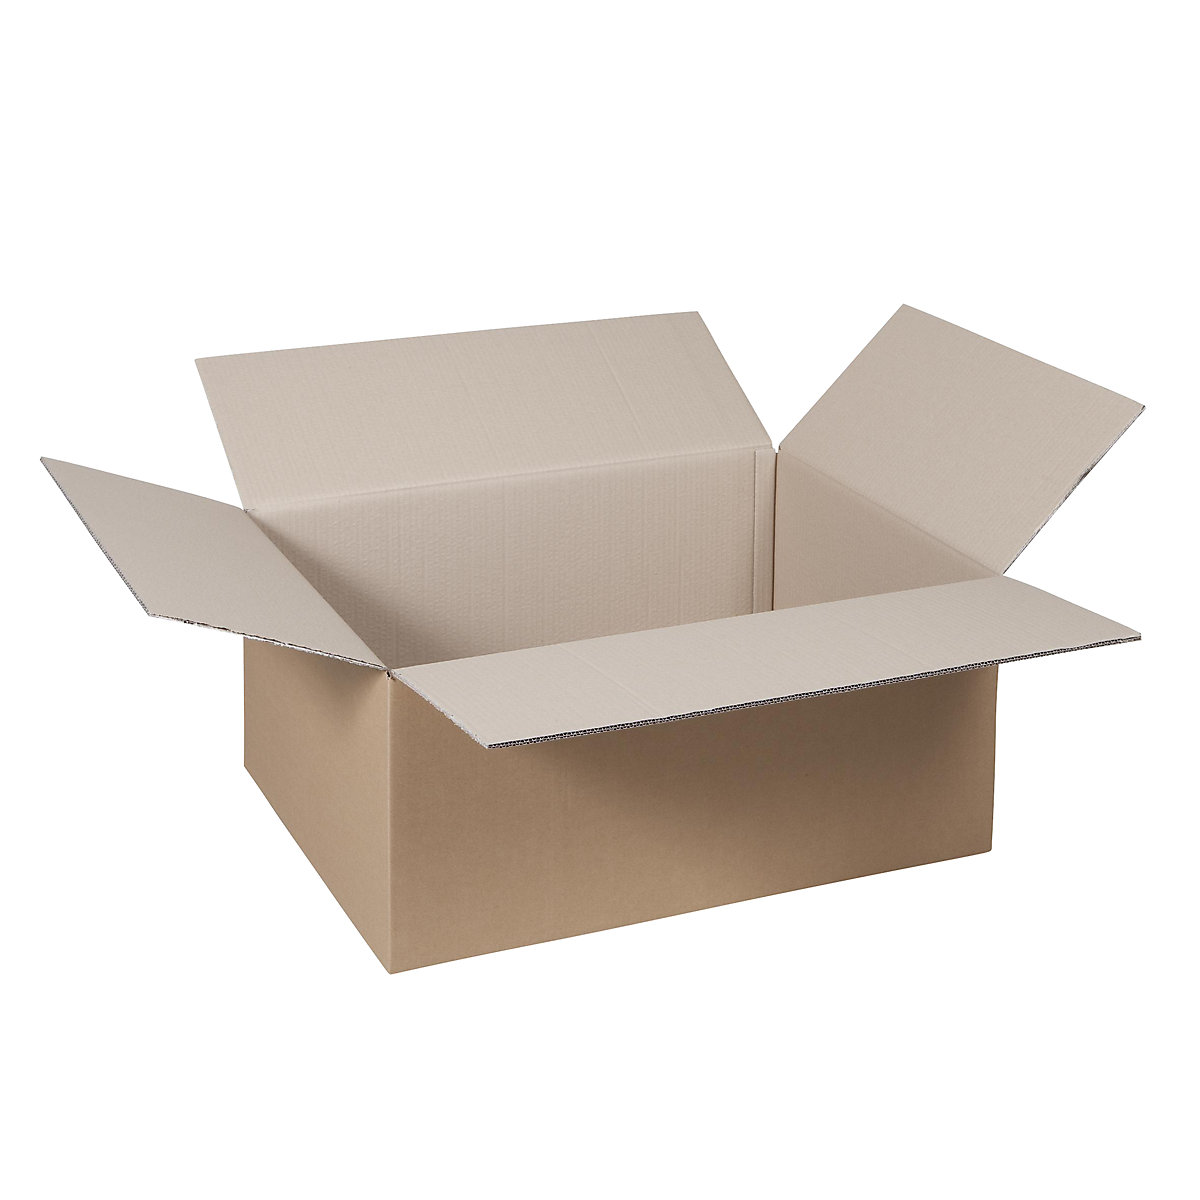 Cutie de carton pliantă, FEFCO 0201, cu 2 straturi de carton ondulat, dimensiuni interioare 700 x 500 x 300 mm, amb. 50 buc.-15